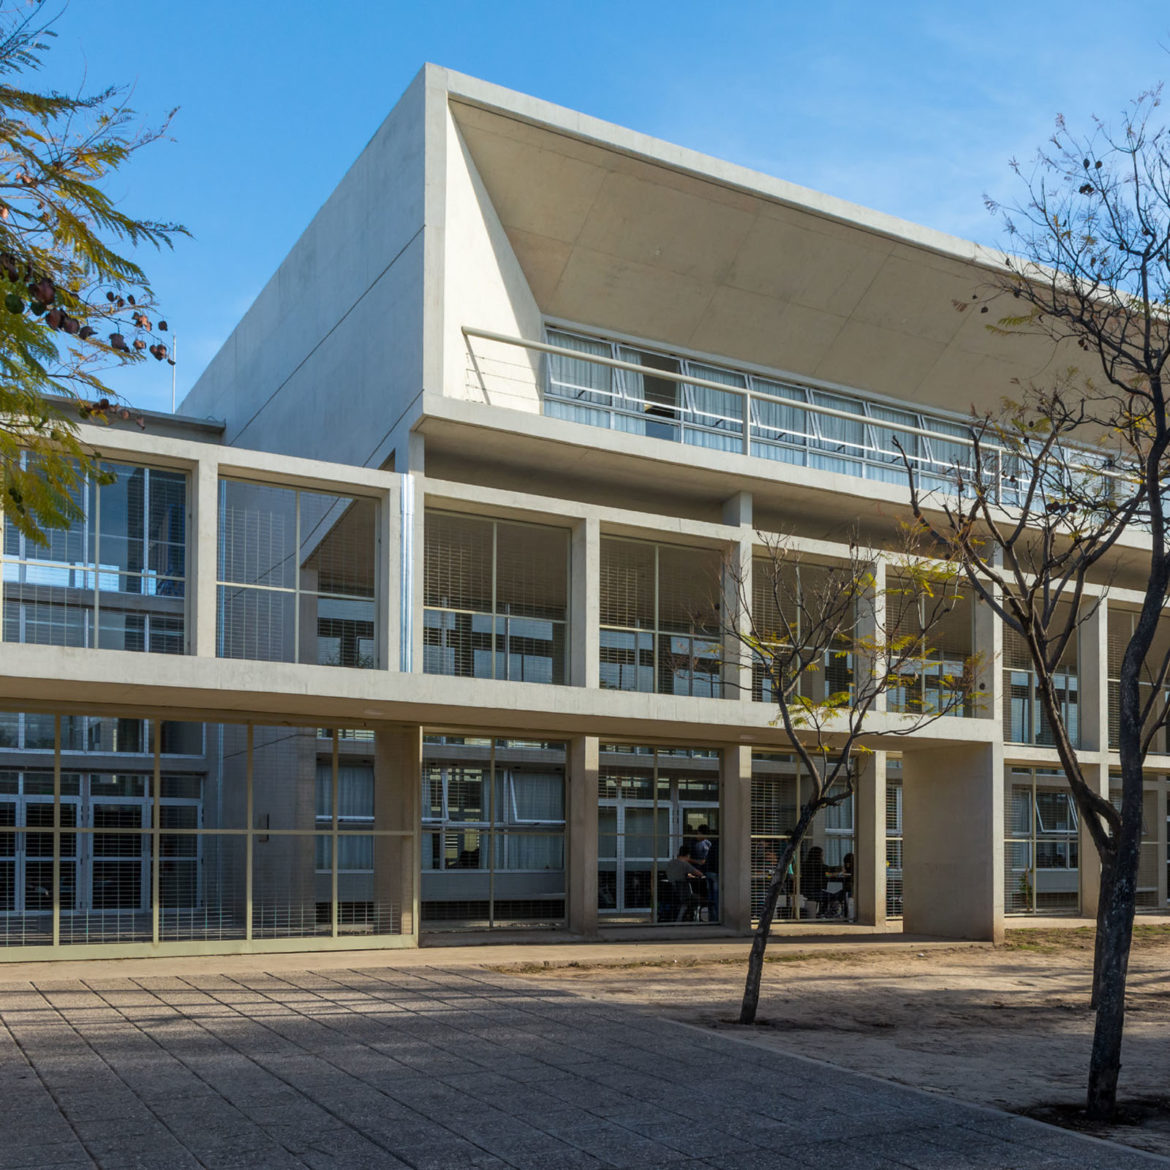 Concurso nacional Ampliación Facultad de Arquitectura, Urbanismo y Diseño de la Universidad Nacional de Córdoba – Primer premio